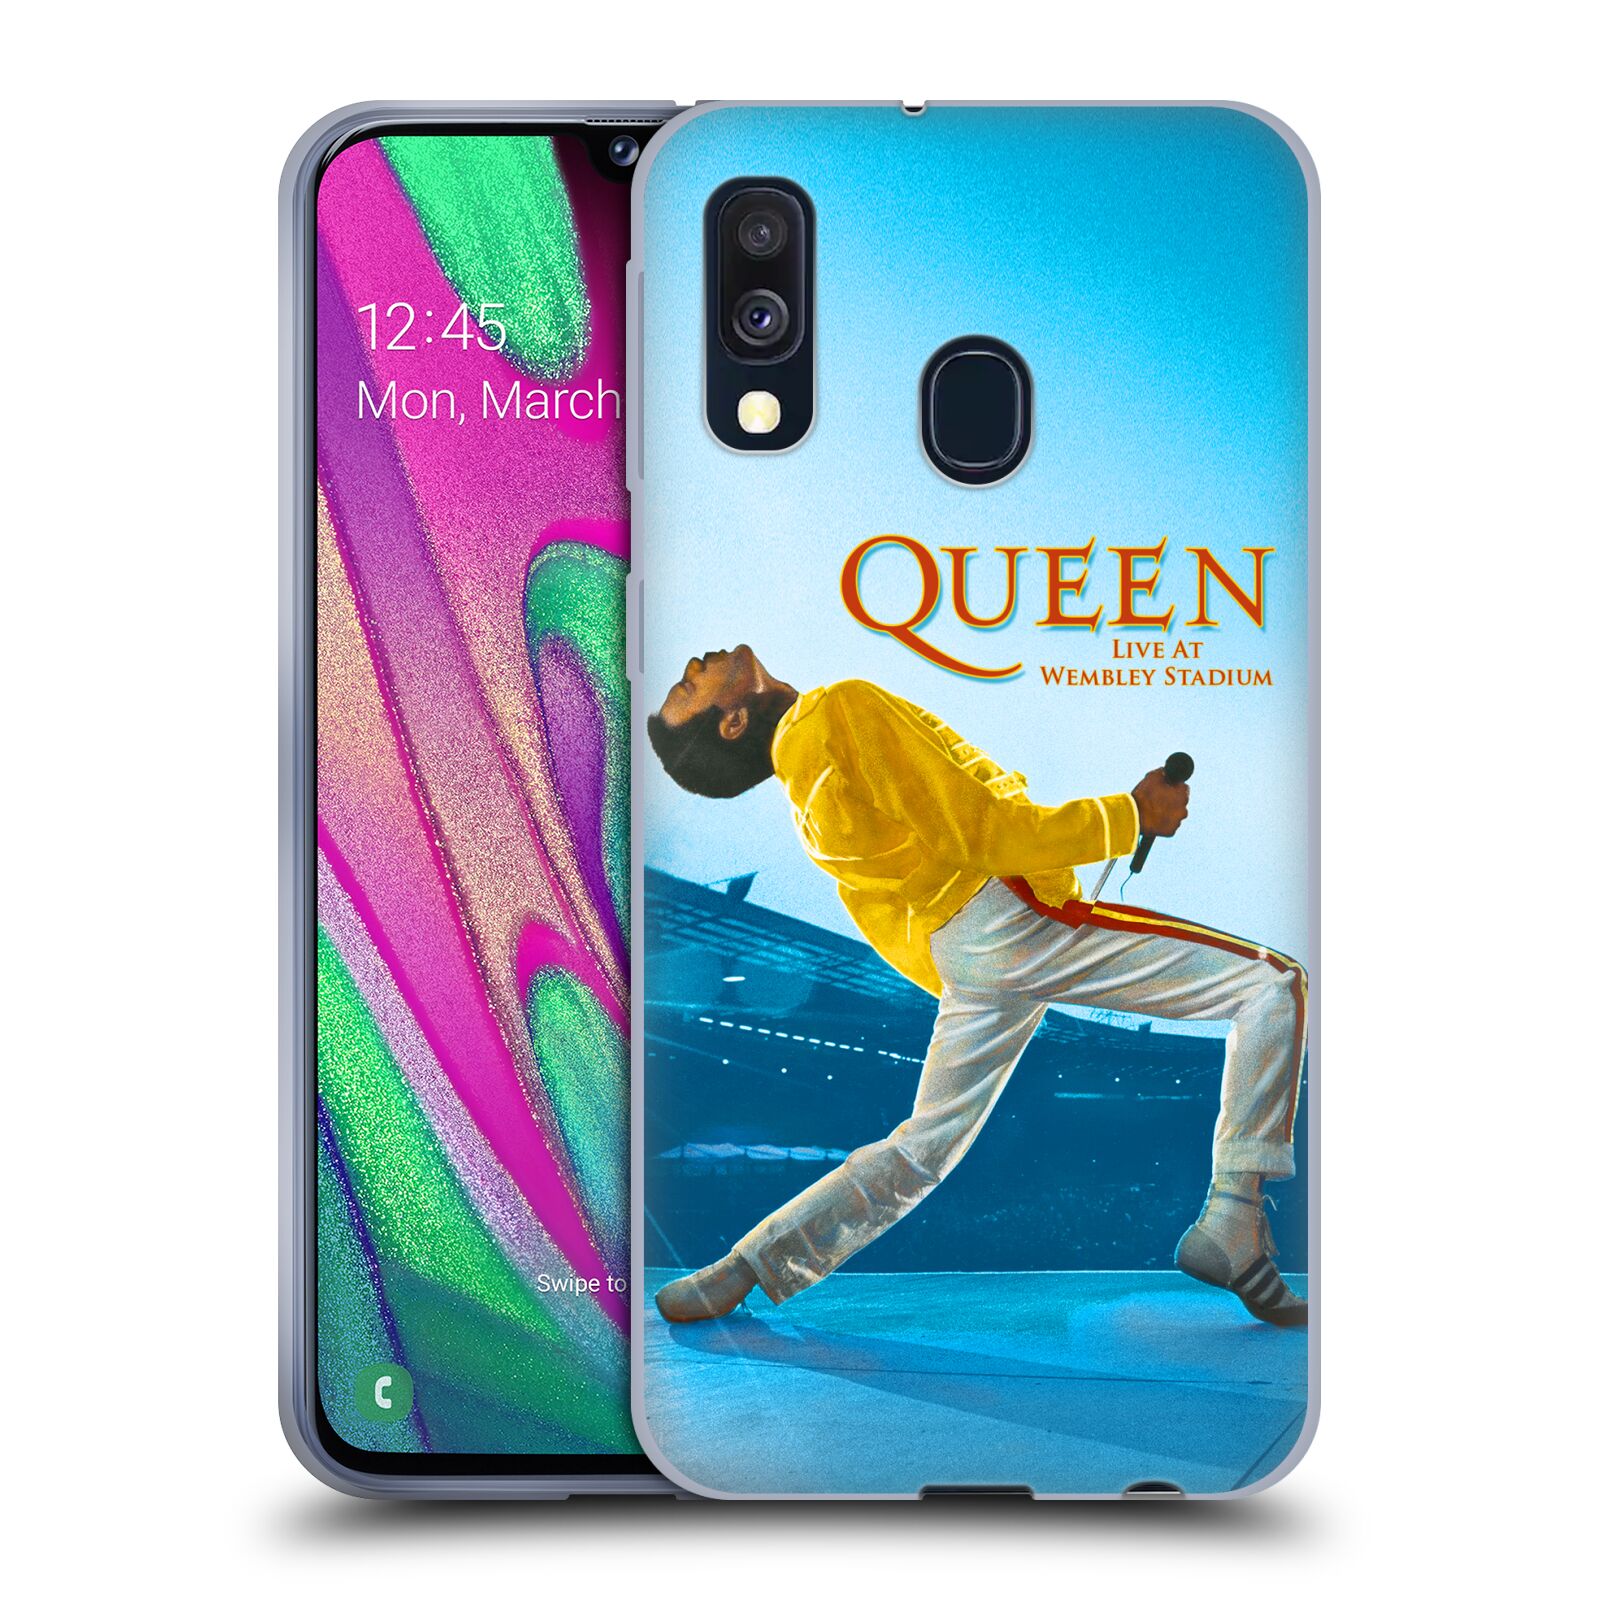 Silikonové pouzdro na mobil Samsung Galaxy A40 - Head Case - Queen - Freddie Mercury (Silikonový kryt, obal, pouzdro na mobilní telefon Samsung Galaxy A40 A405F Dual SIM s motivem Queen - Freddie Mercury)